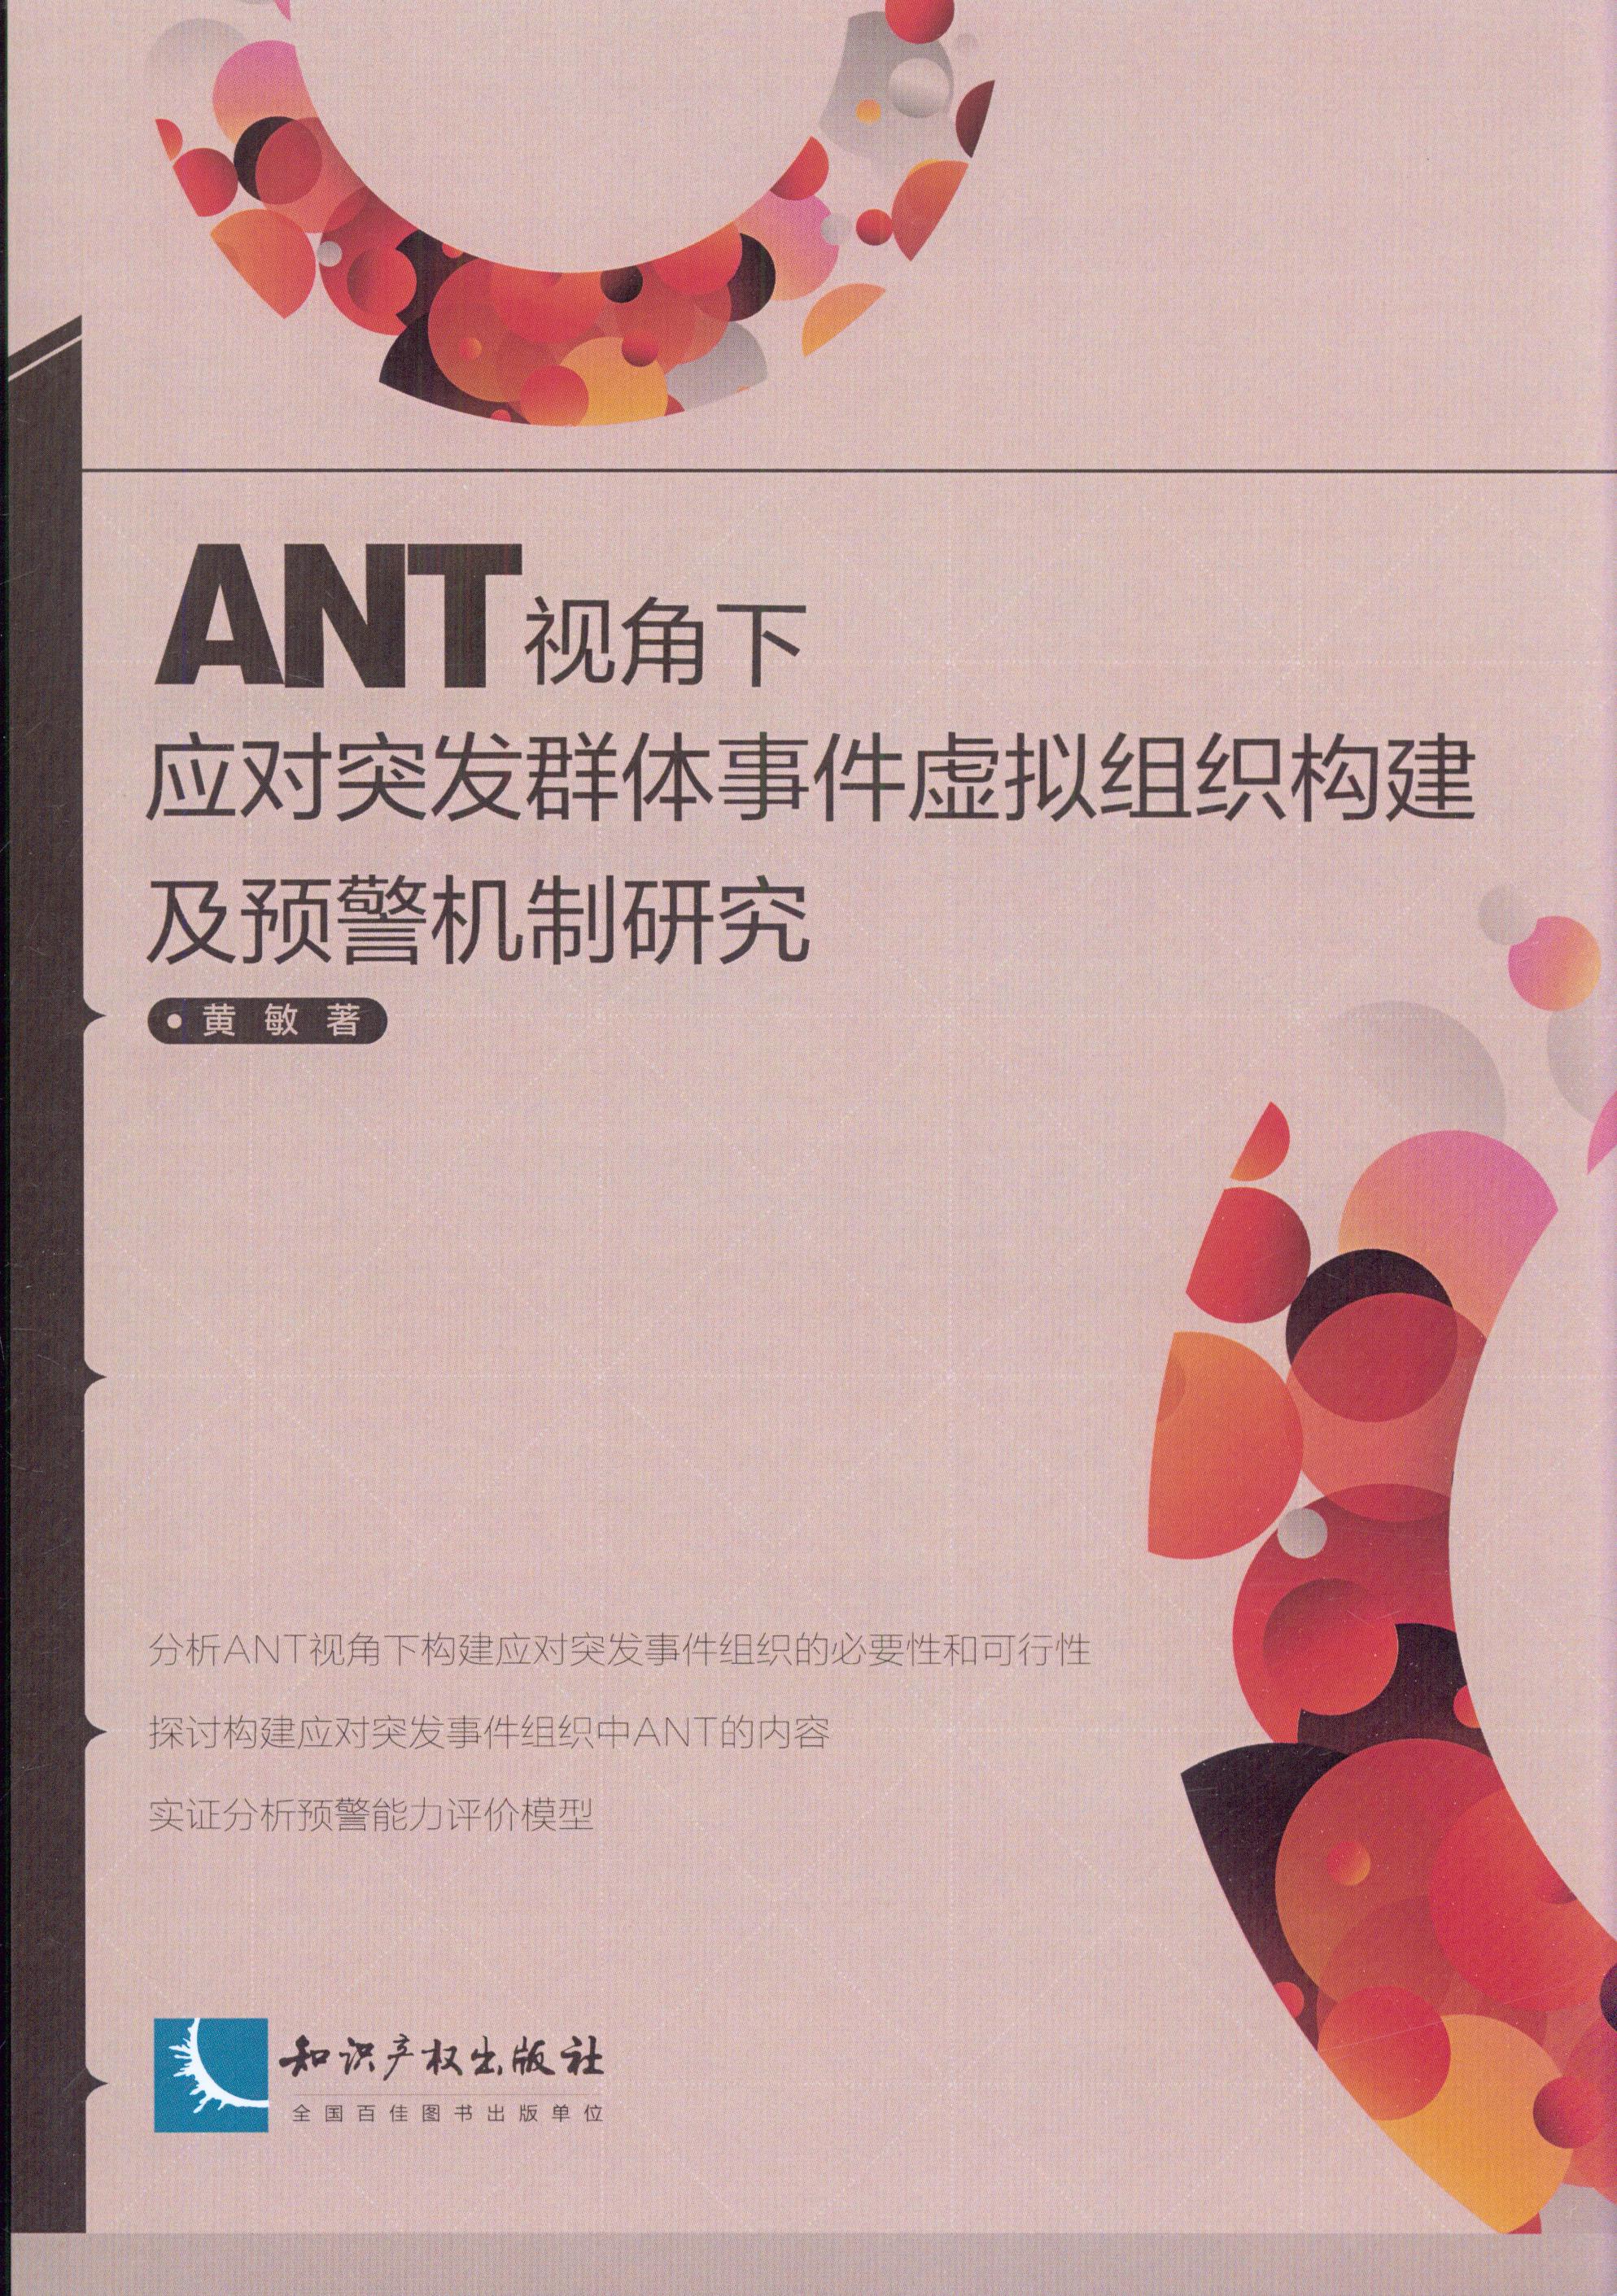 ANT视角下应对突发群体事件虚拟组织构建及预警机制研究